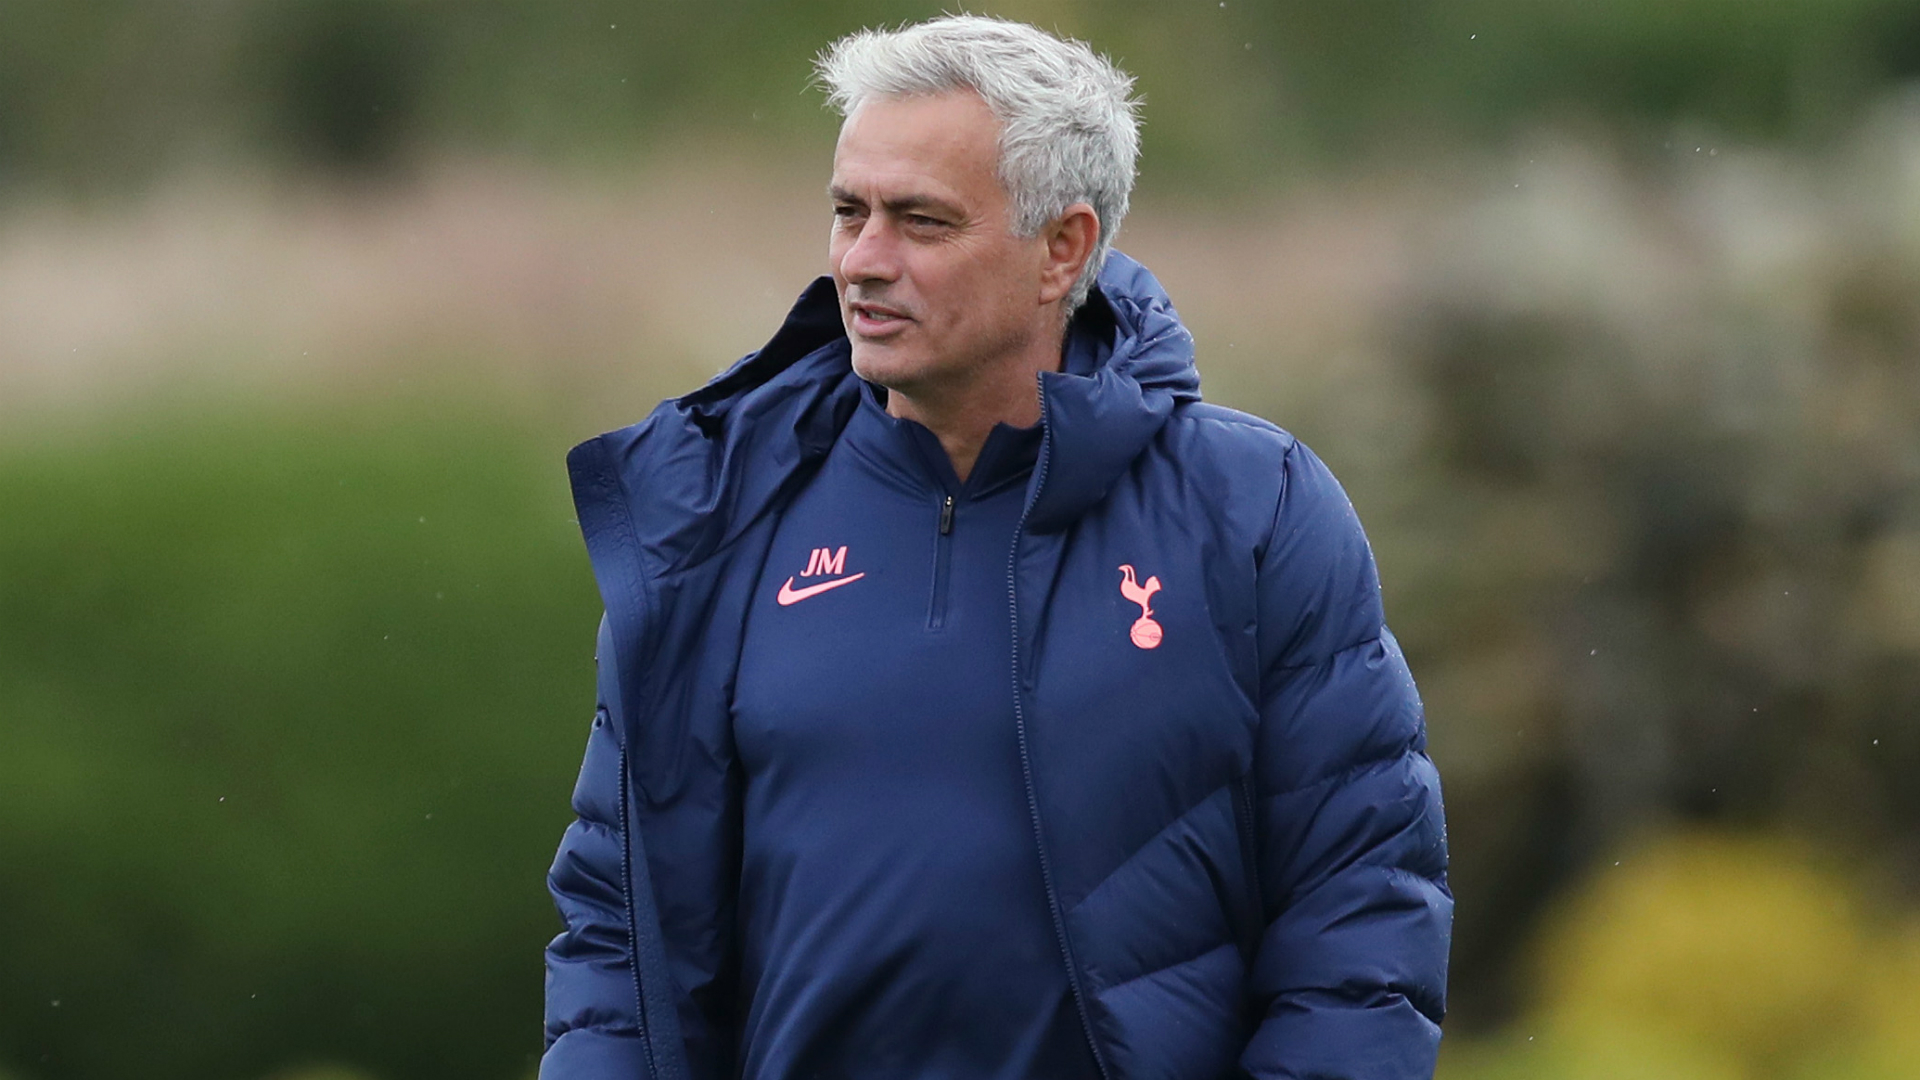 Tottenham head coach Jose Mourinho is unfazed about the Premier League table – for now.